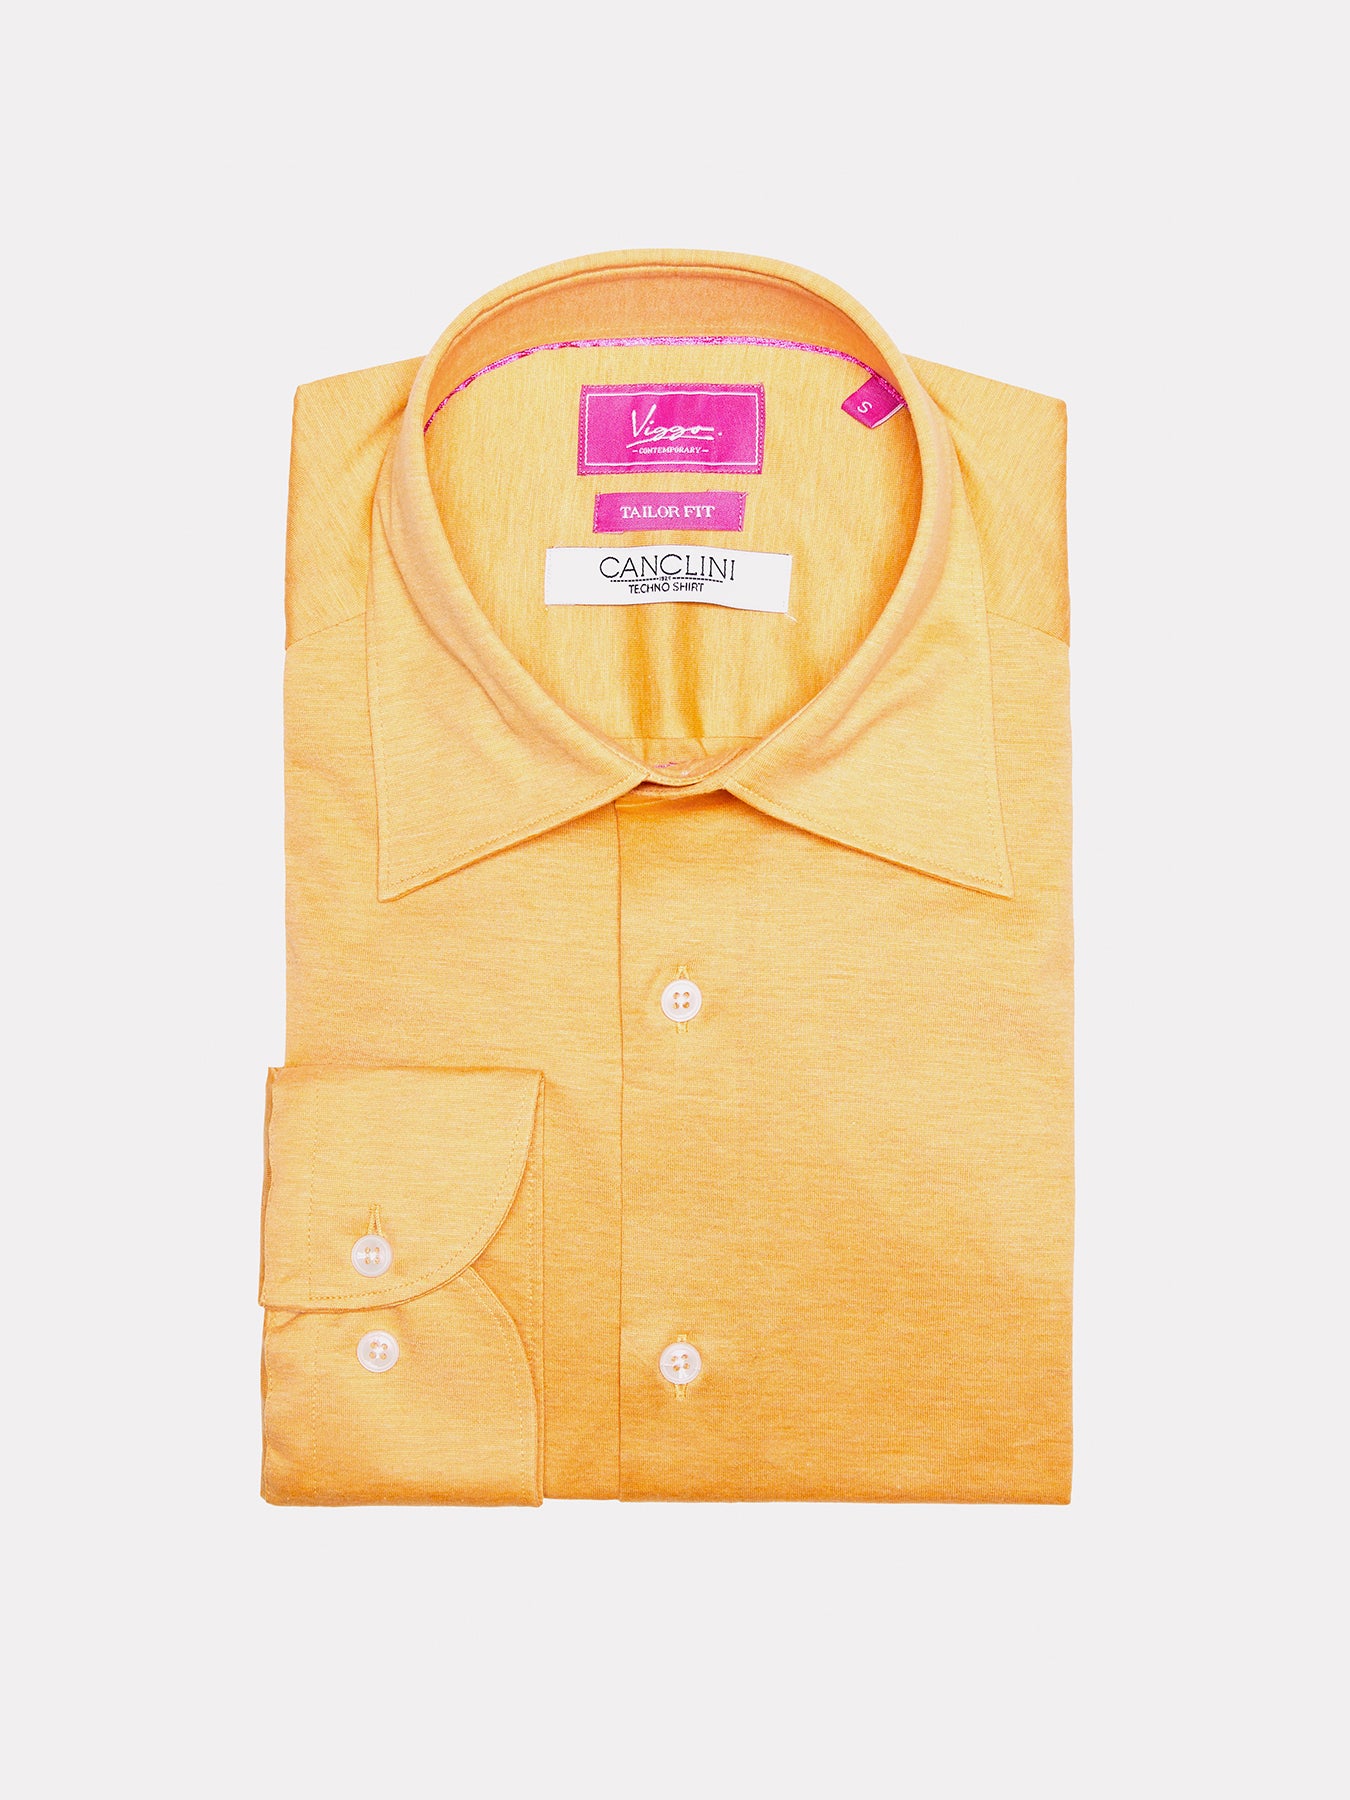 Yellow jersey shirt, techno fabric